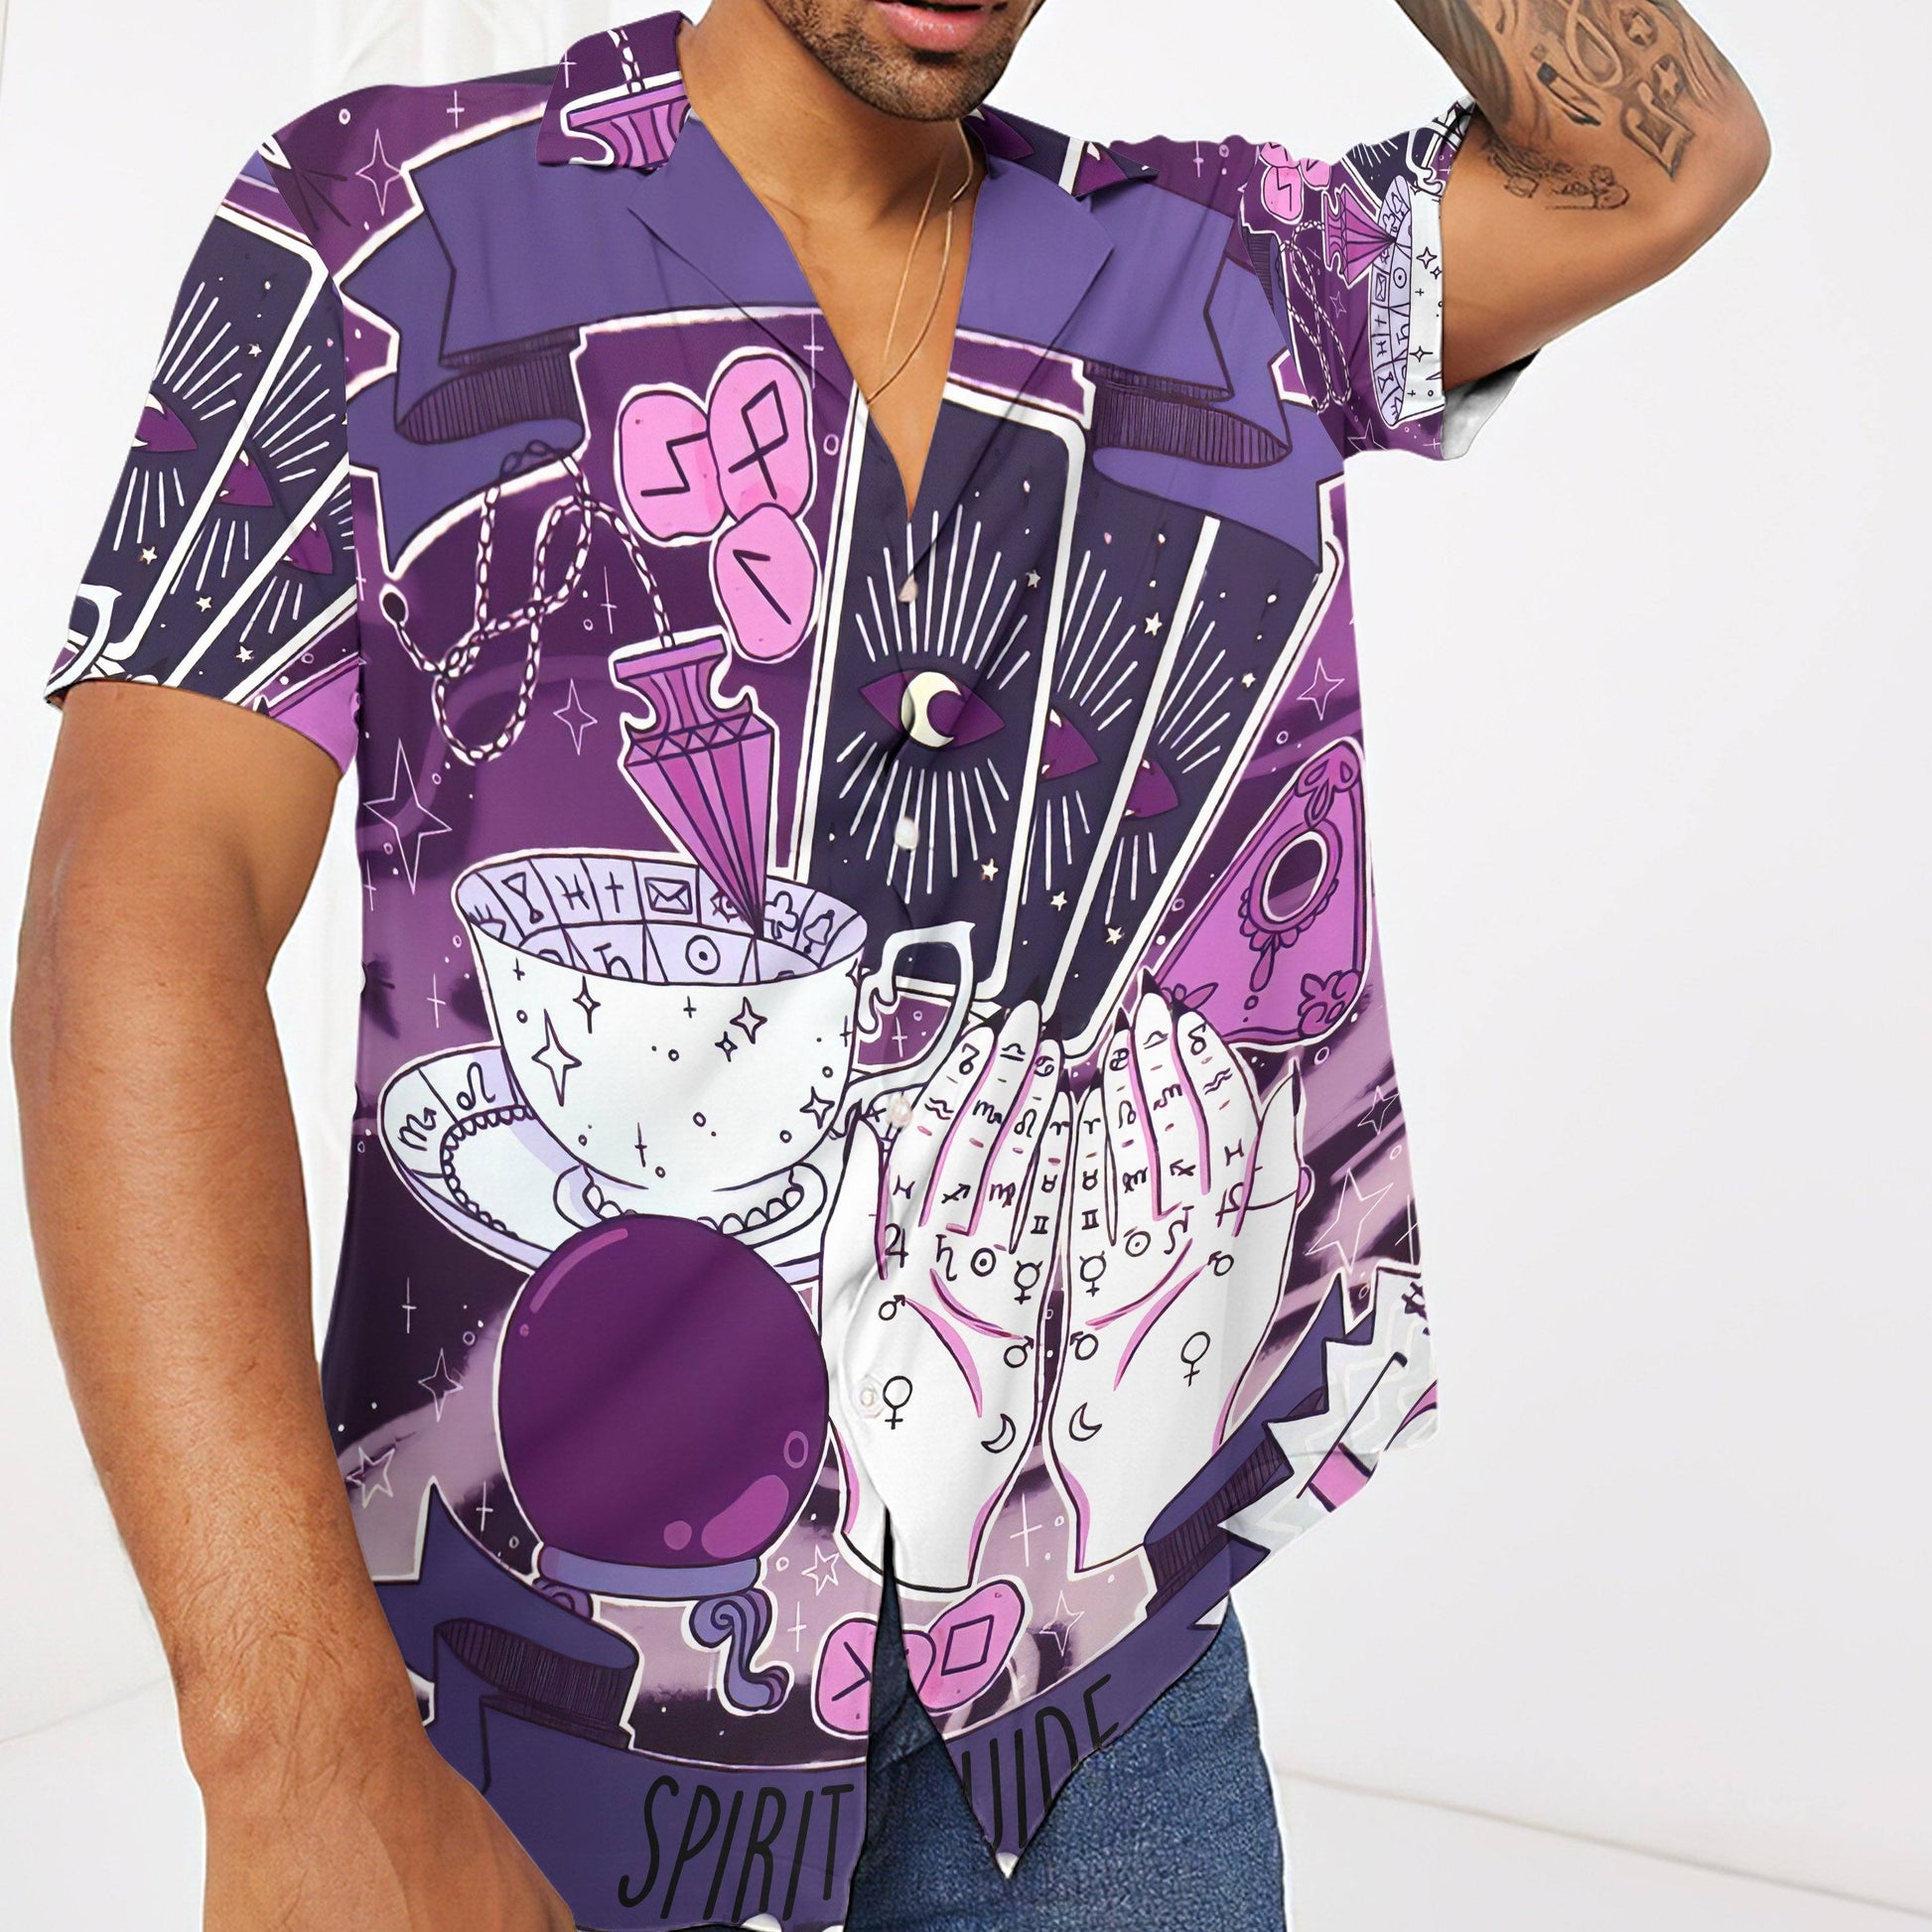 Gearhumans 3D Tasseography Tarot Zodiac Divination Custom Short Sleeve Shirt GS30062120 Hawai Shirt 